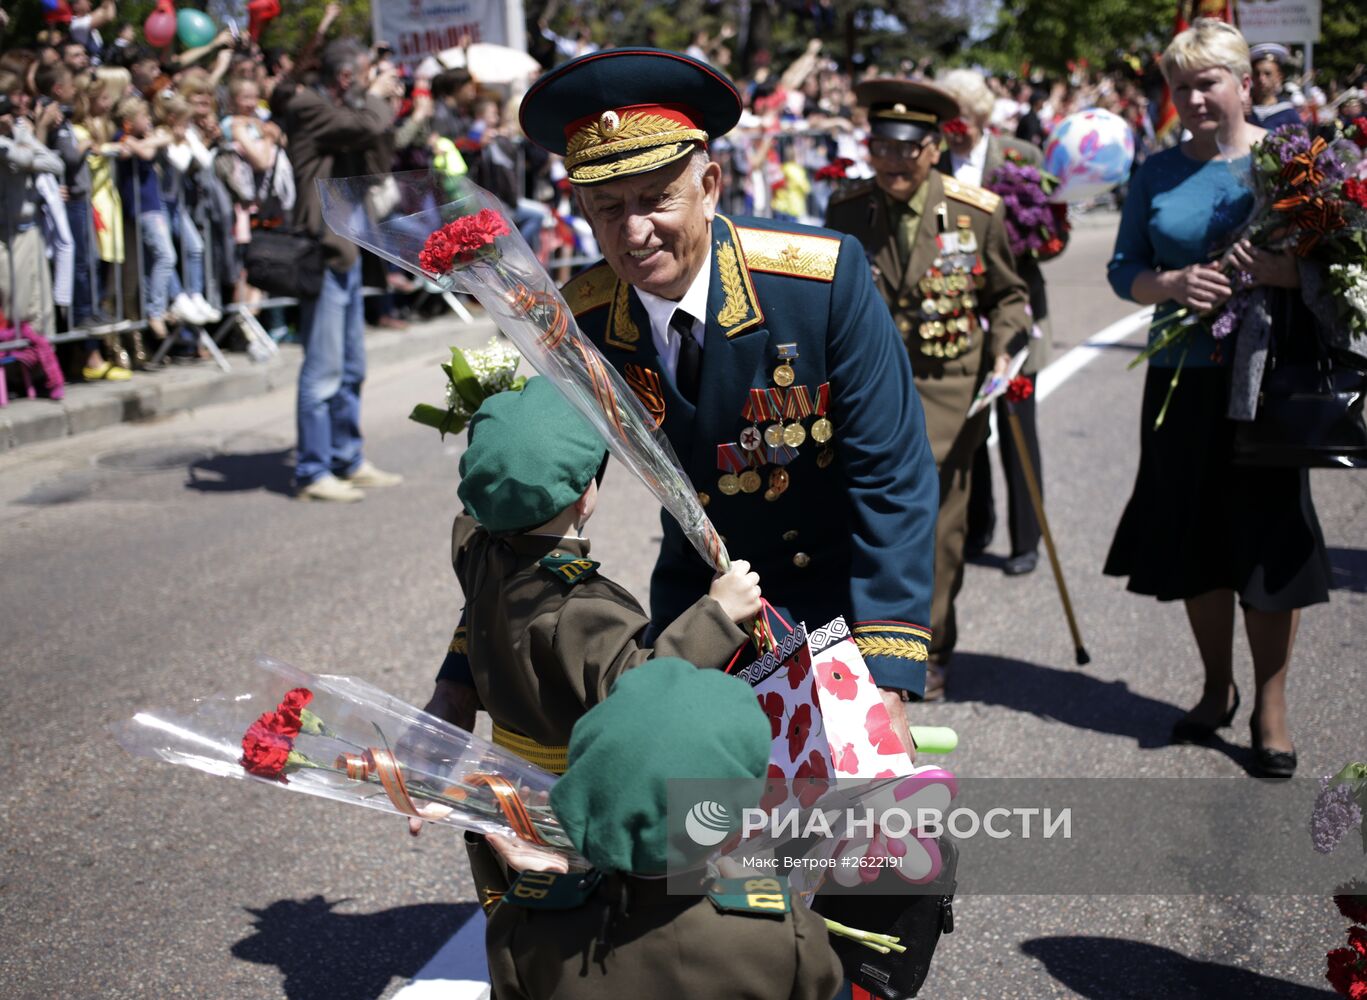 Празднование 70-летия Победы в Великой Отечественной войне 1941-1945 годов в городе-герое Севастополе